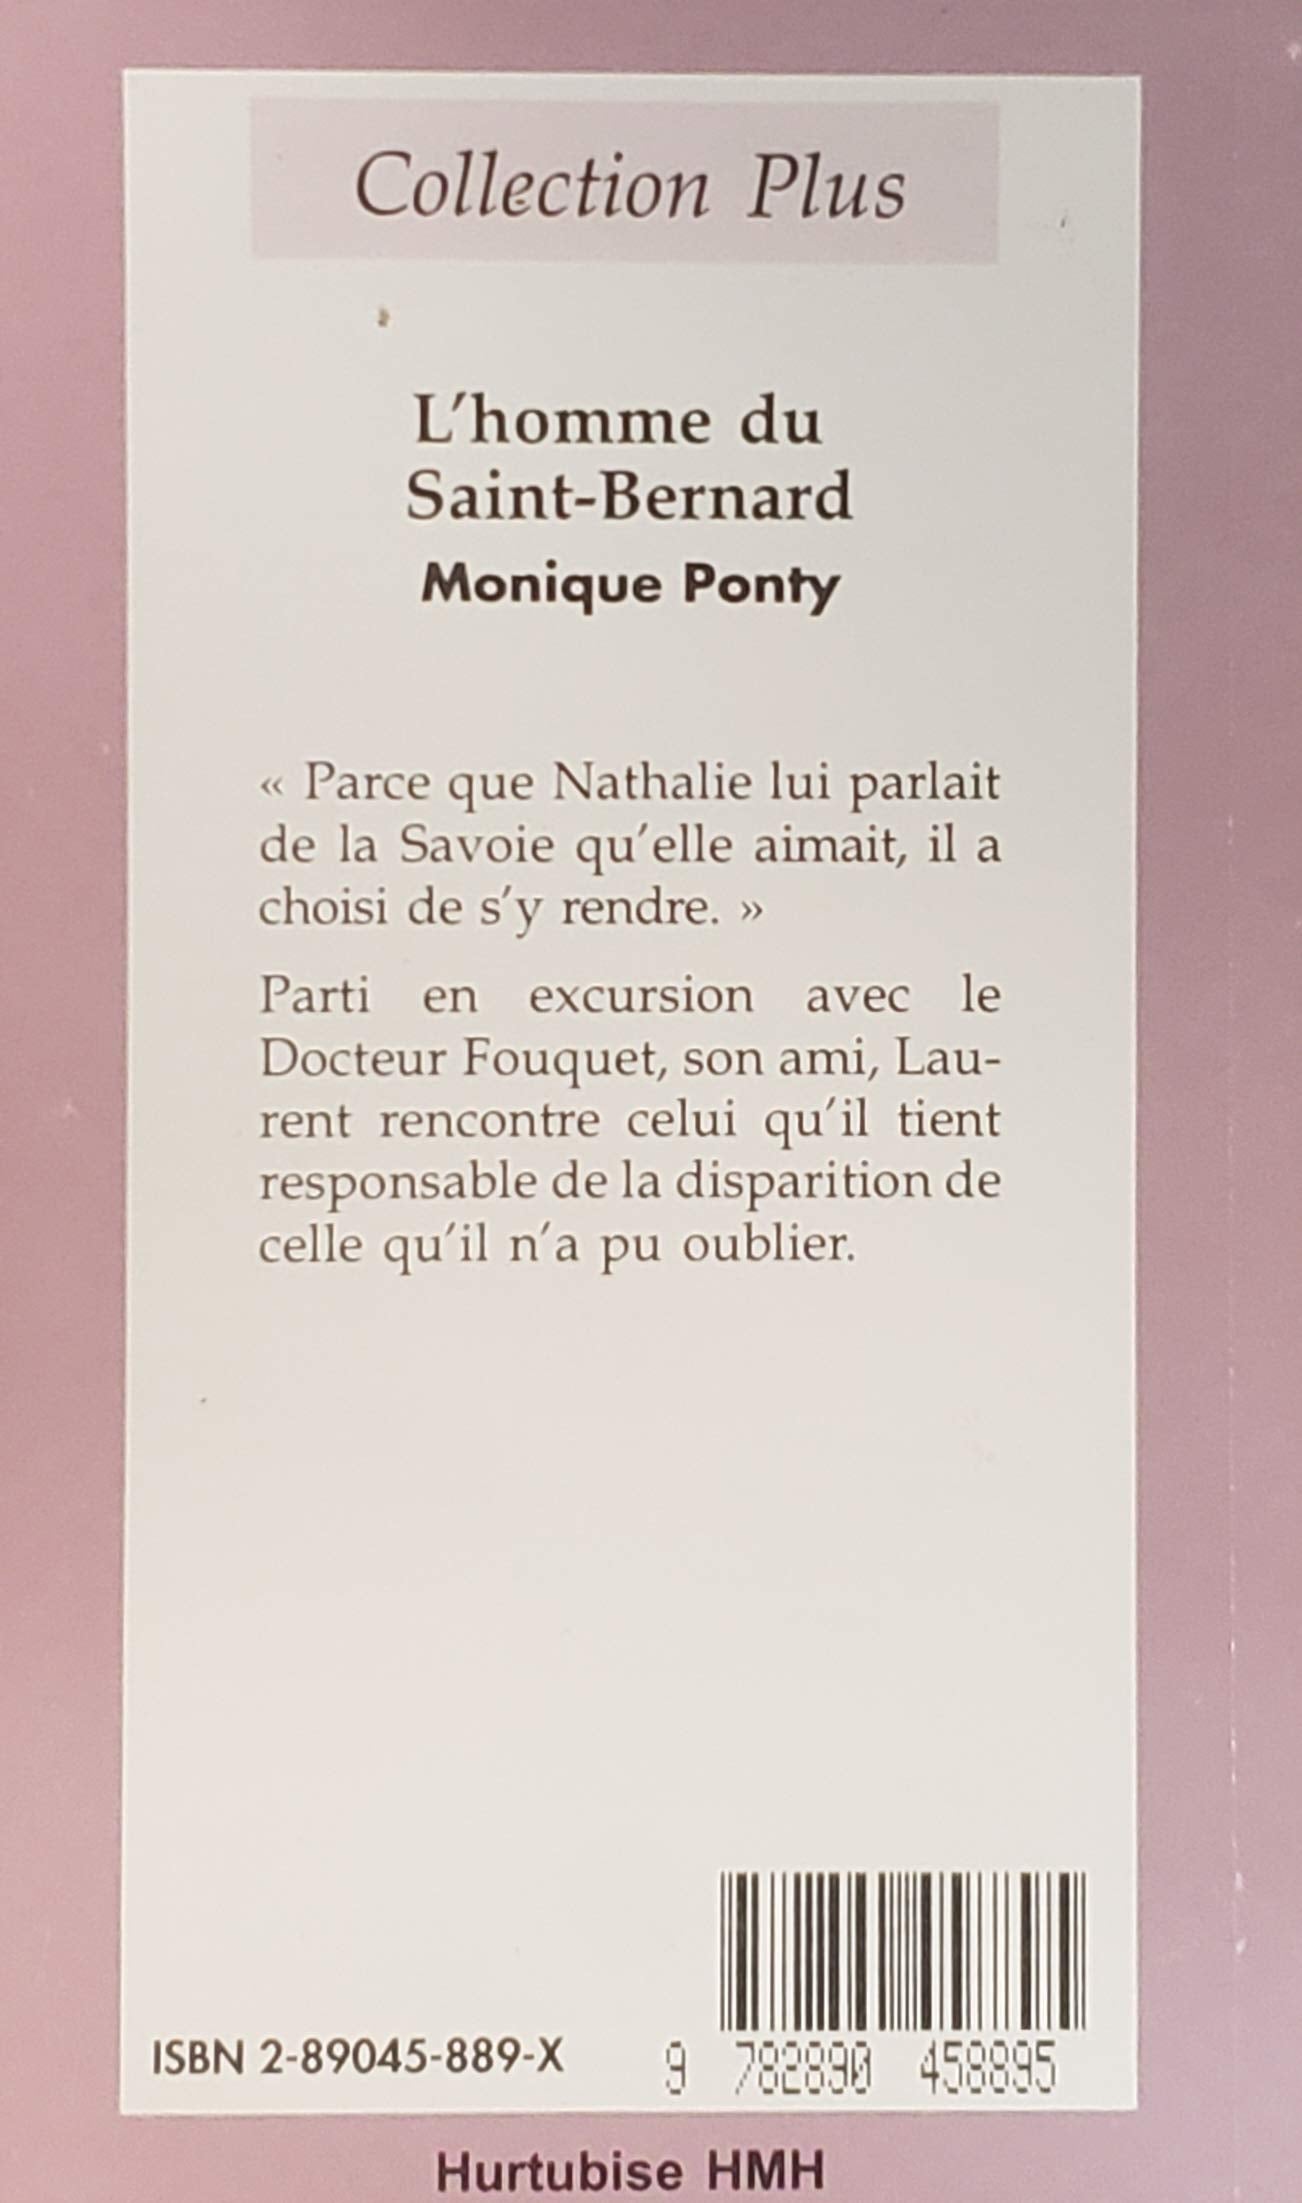 Collection Plus : L'homme du Saint-Bernard (Monique Ponty)